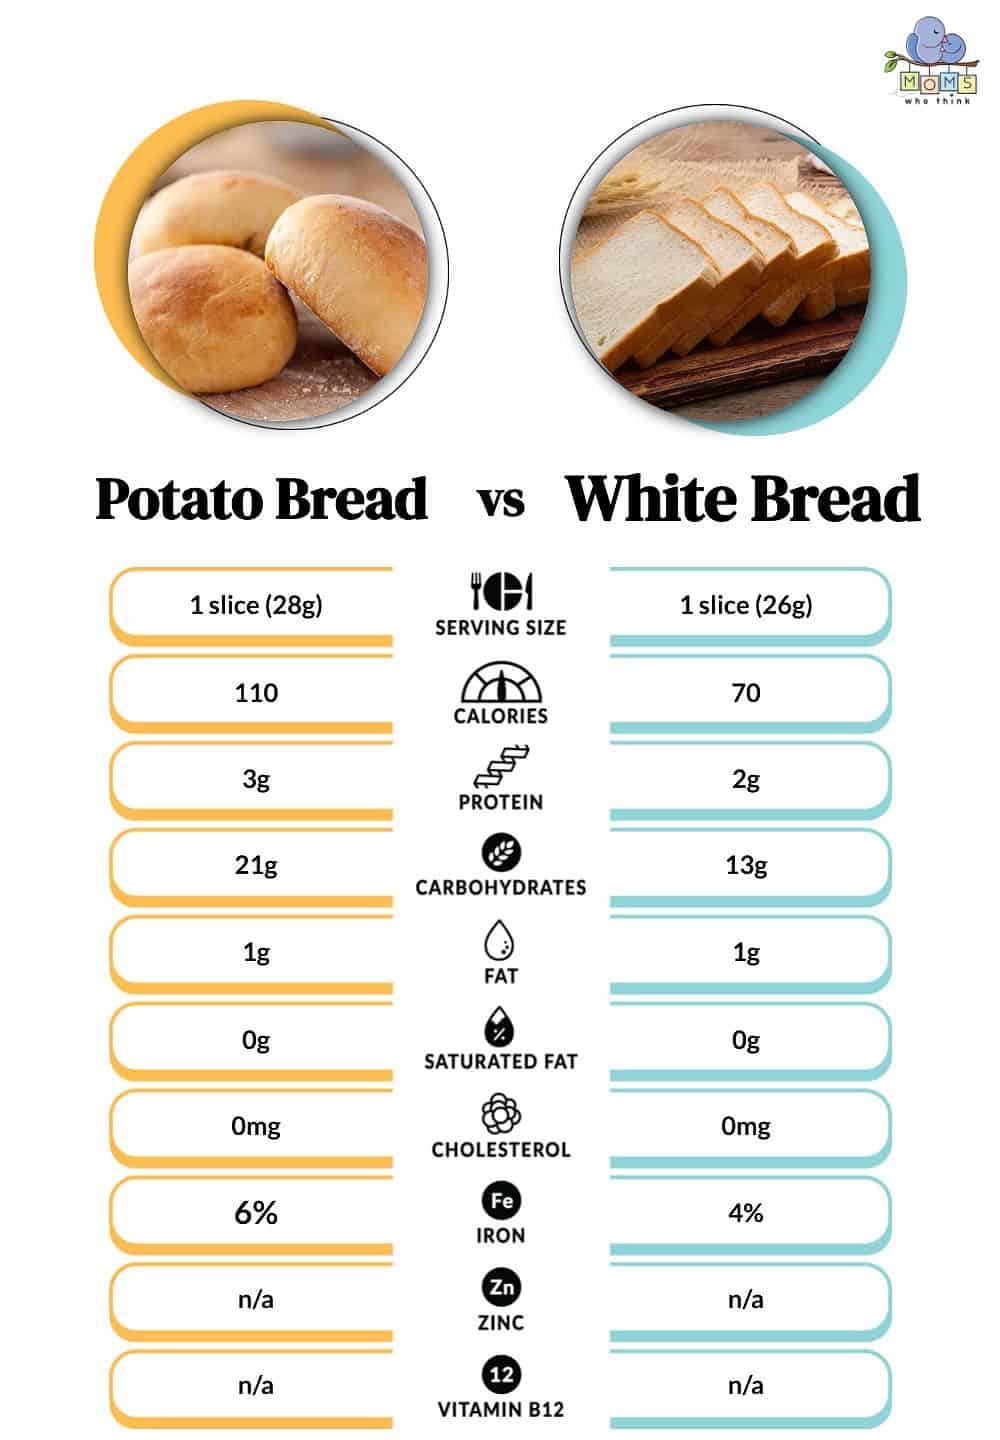 Potato Bread vs White Bread: The 3 Main Differences